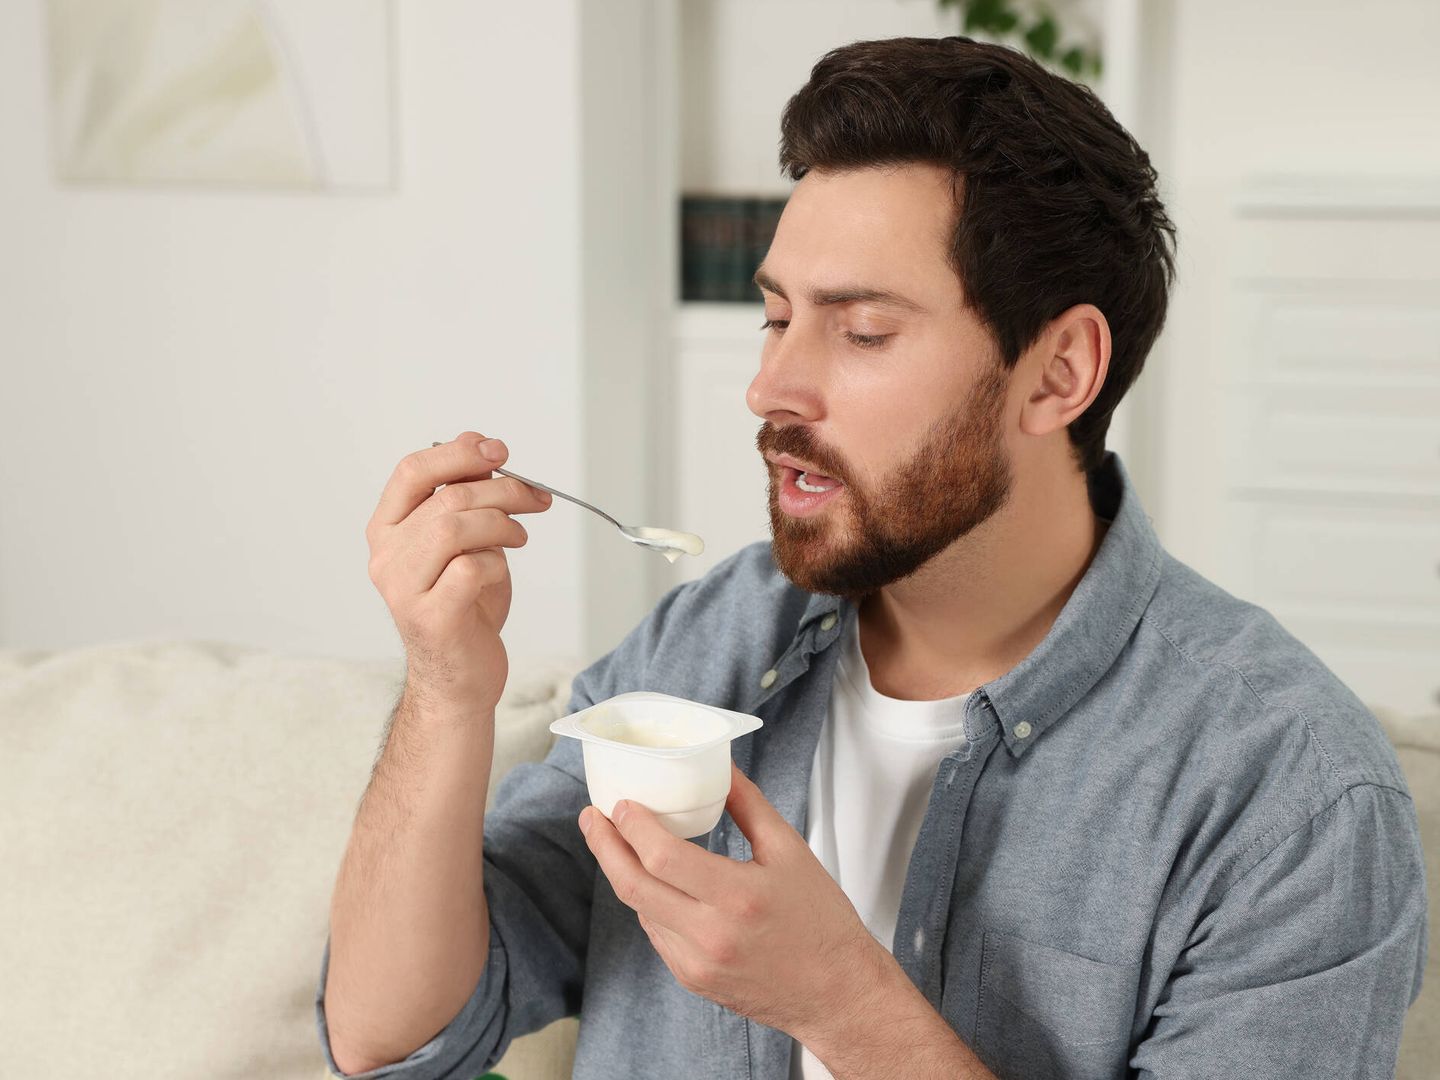 Los probióticos del yogur ayudan a tener una microbiota intestinal equilibrada. (iStock)